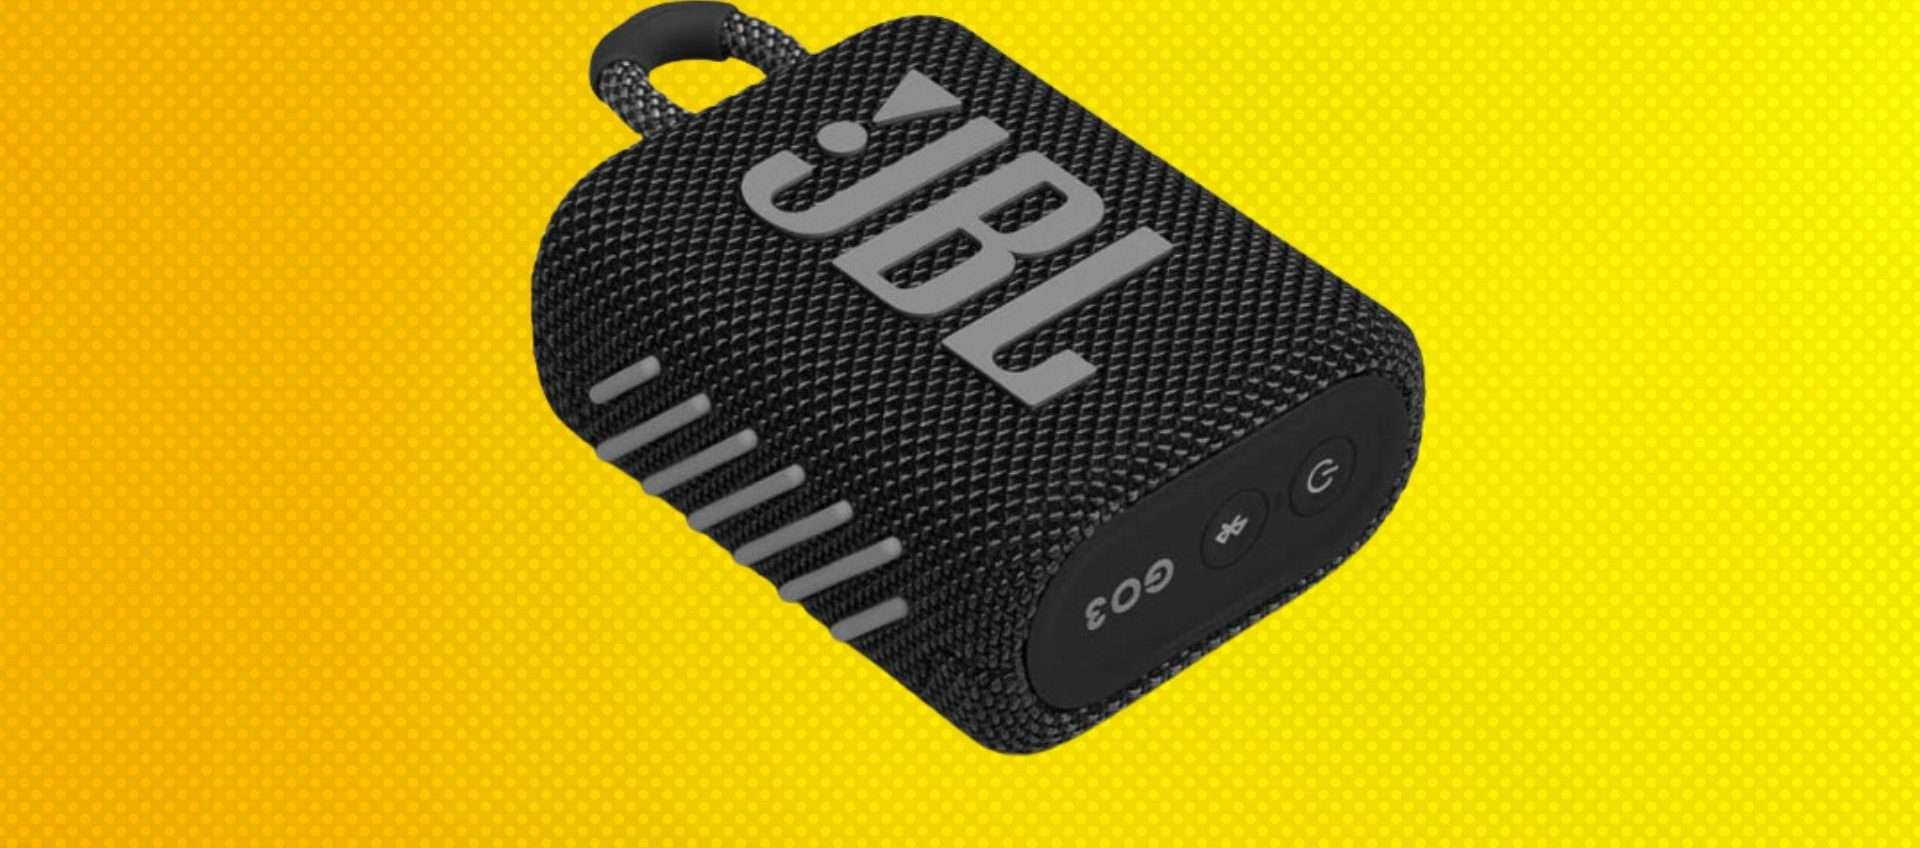 JBL Go 3 in offerta su Amazon a meno di 35€: design compatto, ruggito potente